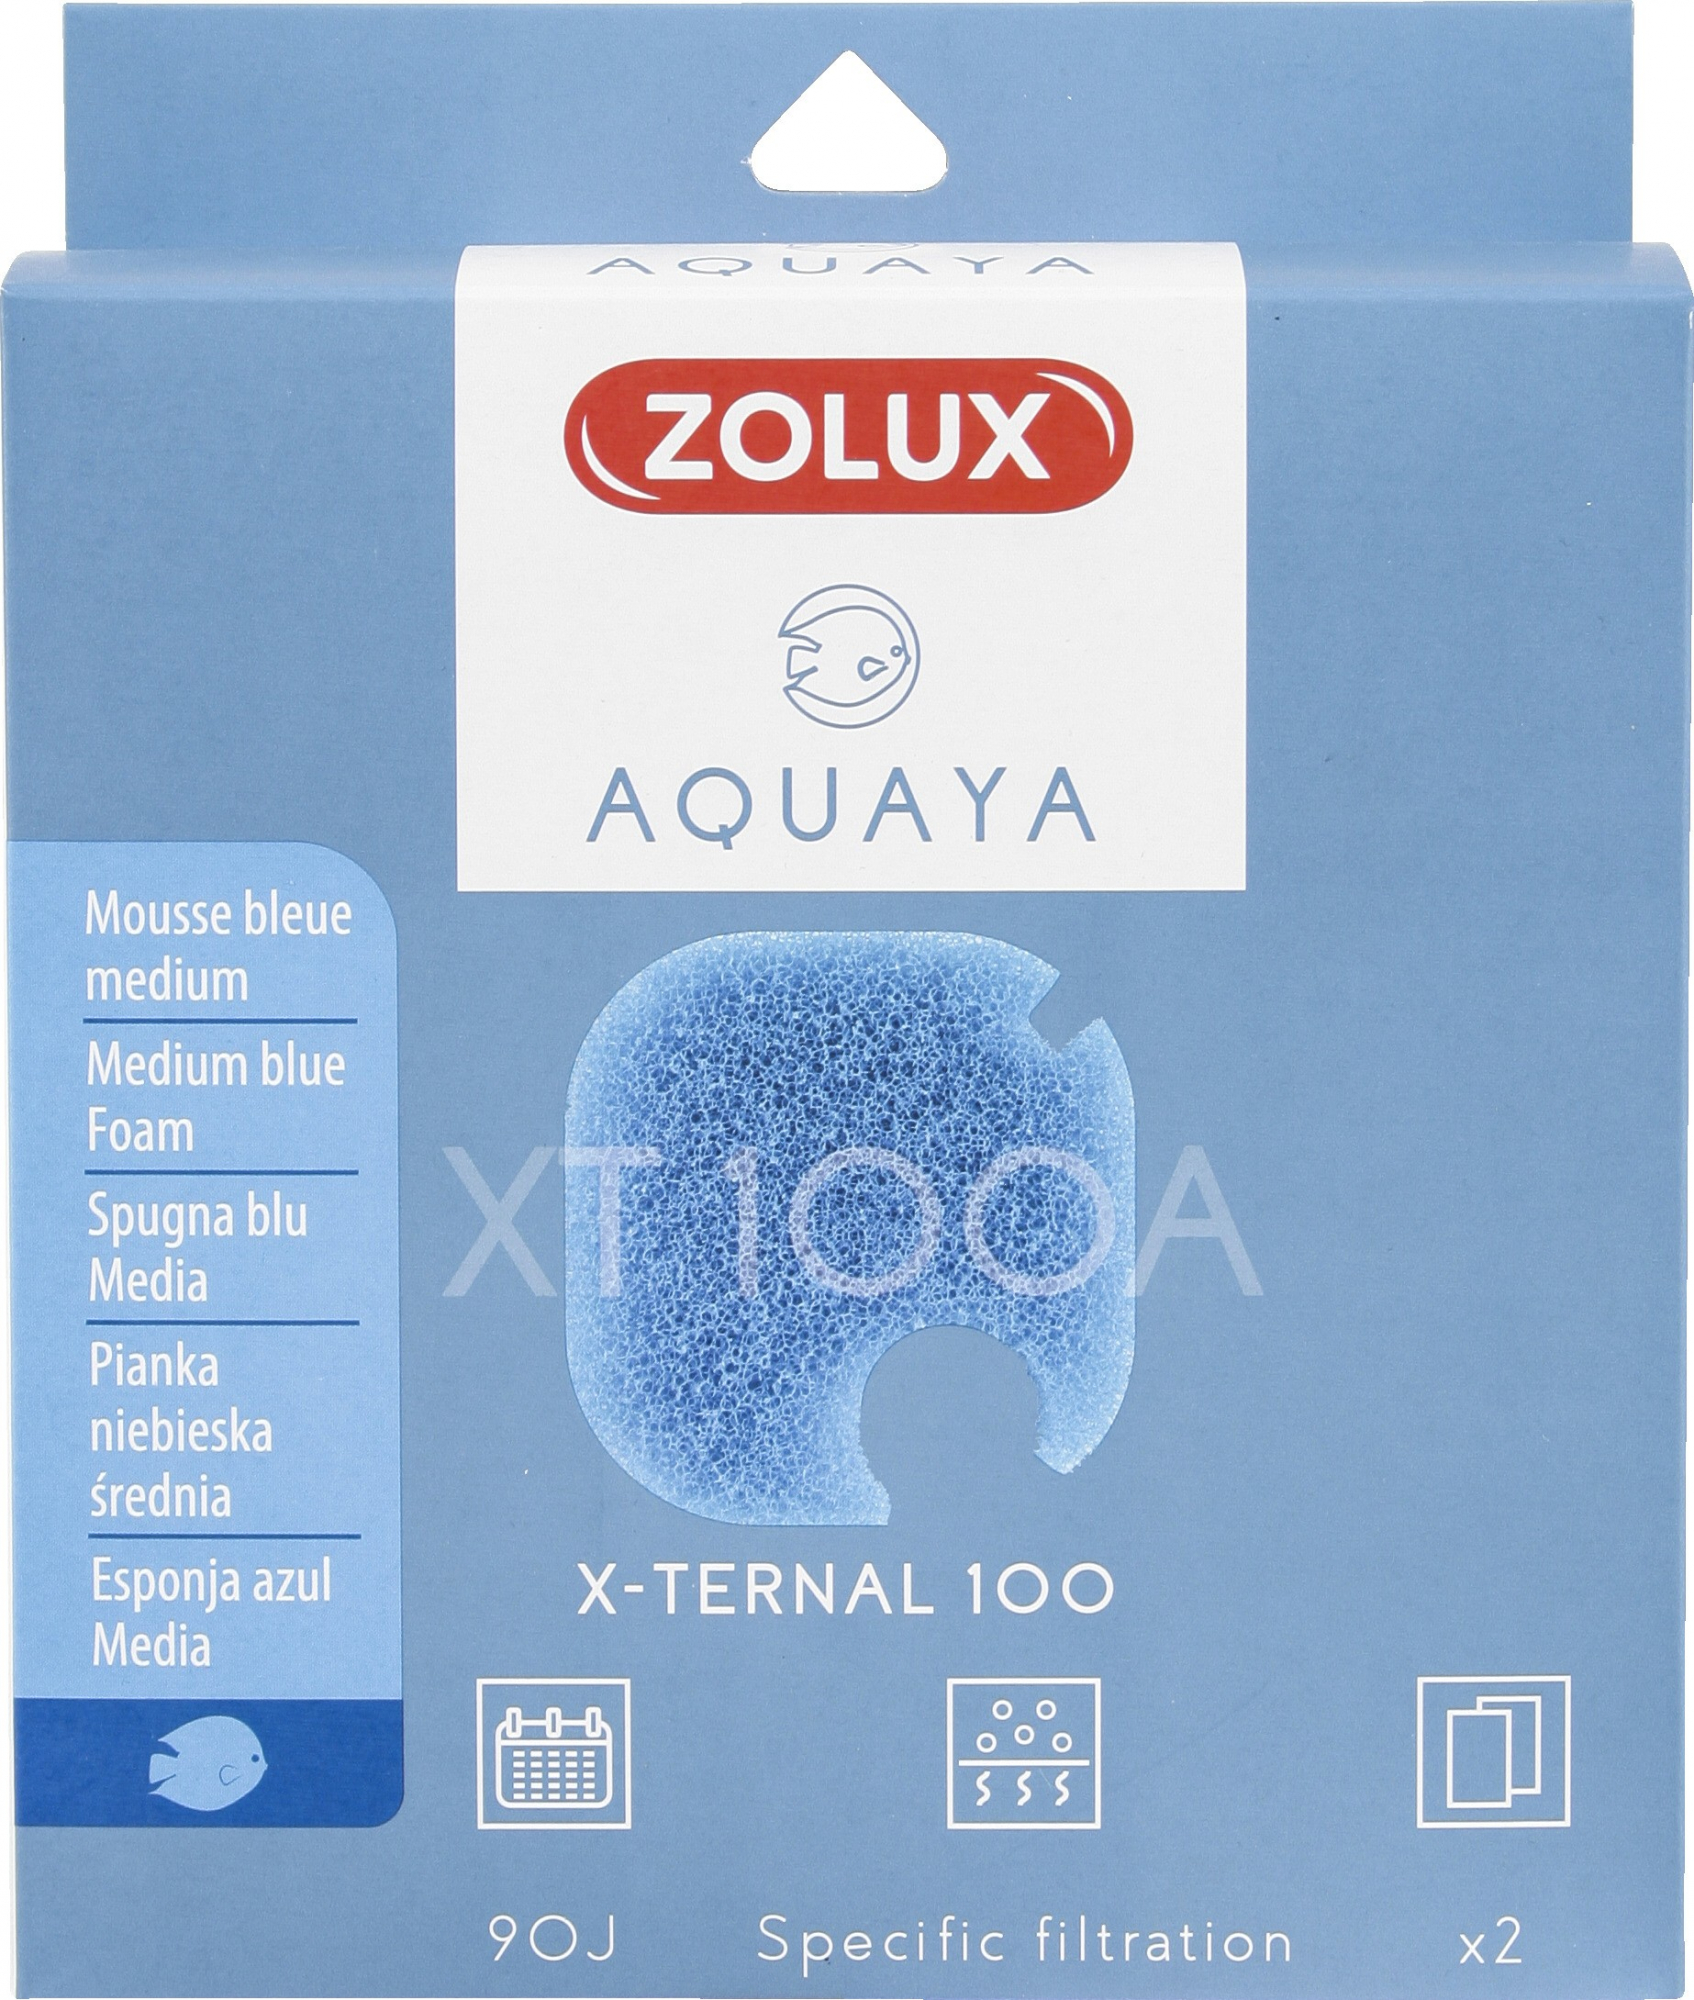 Blauwe spons voor filter Xternal Aquaya